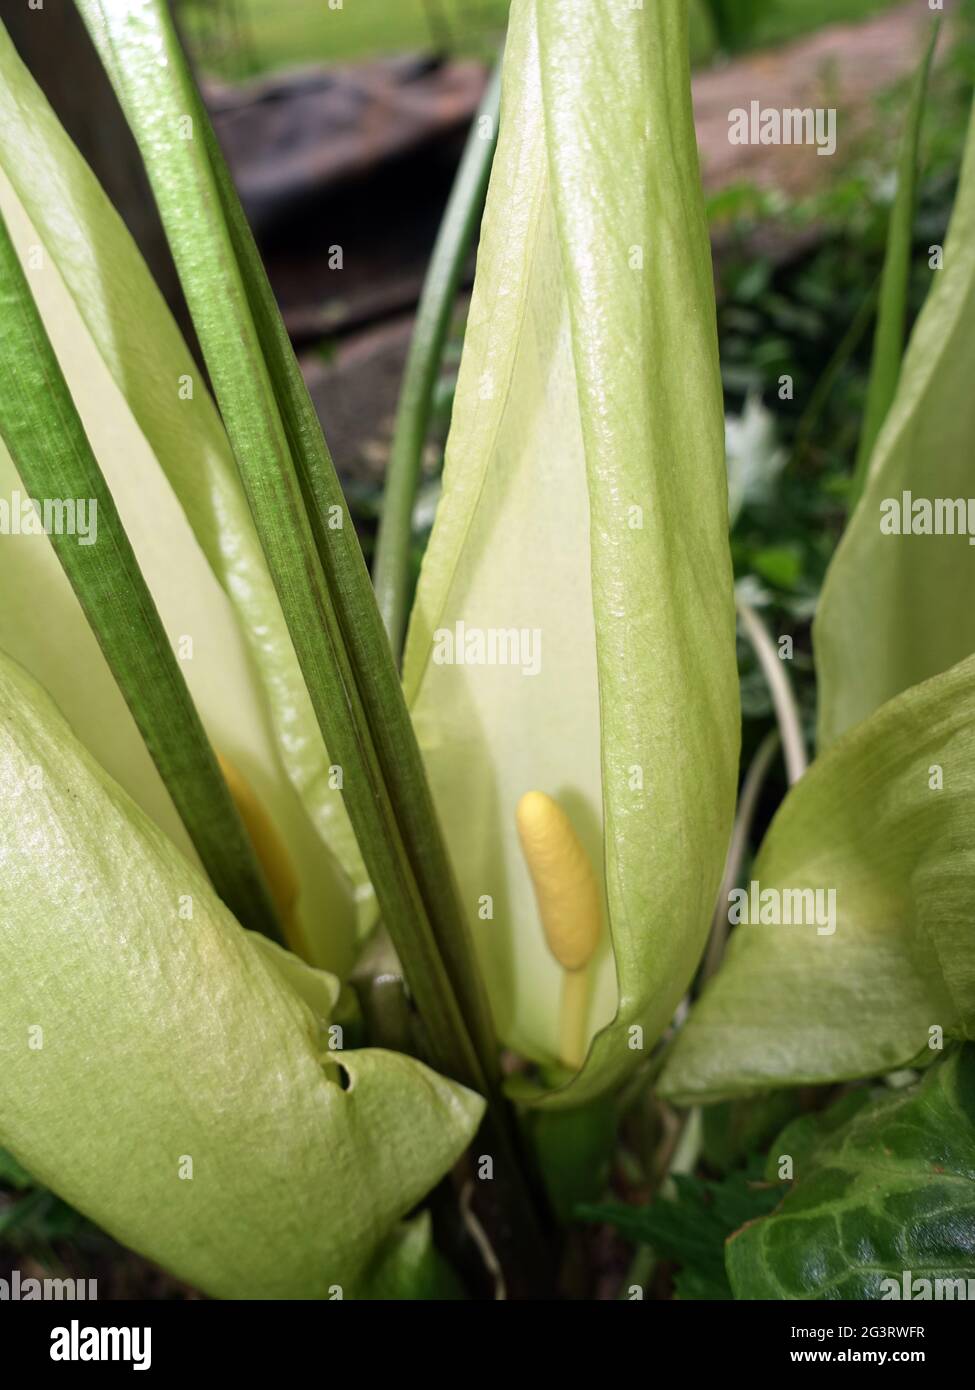 Italian arum or Italian lords-and-ladies (Arum italicum) - Flowering plant Stock Photo